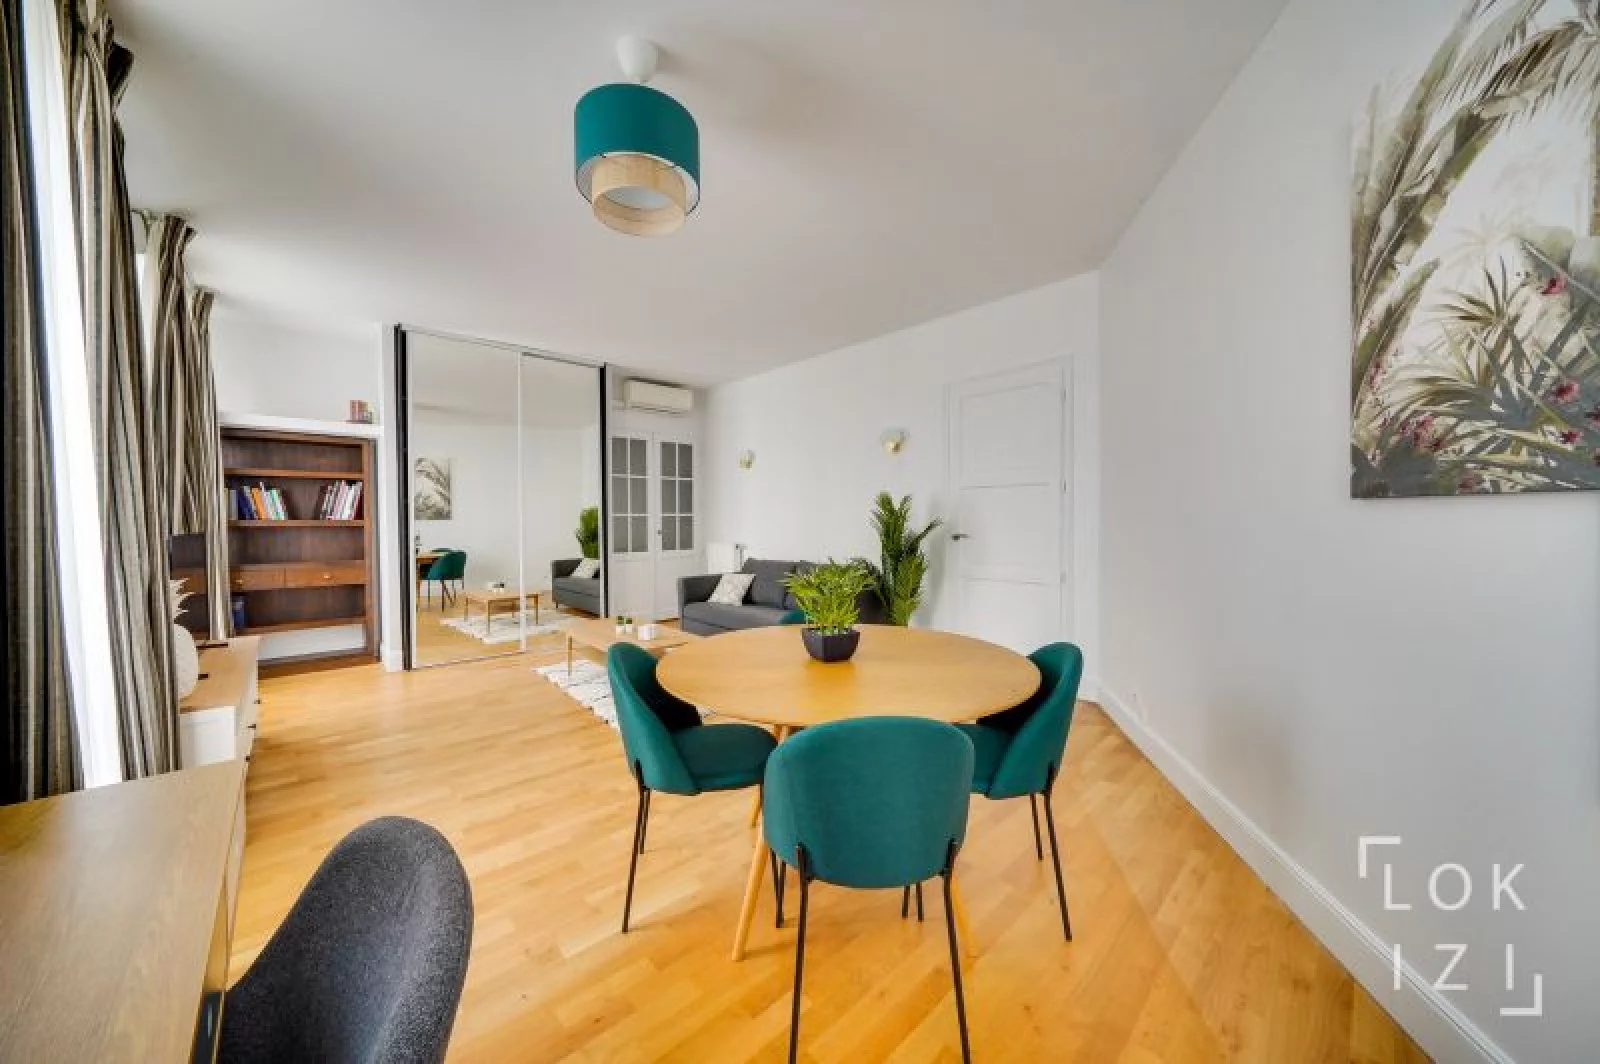 Location appartement meublé 2 pièces 61m² (Bordeaux centre - Gambetta)